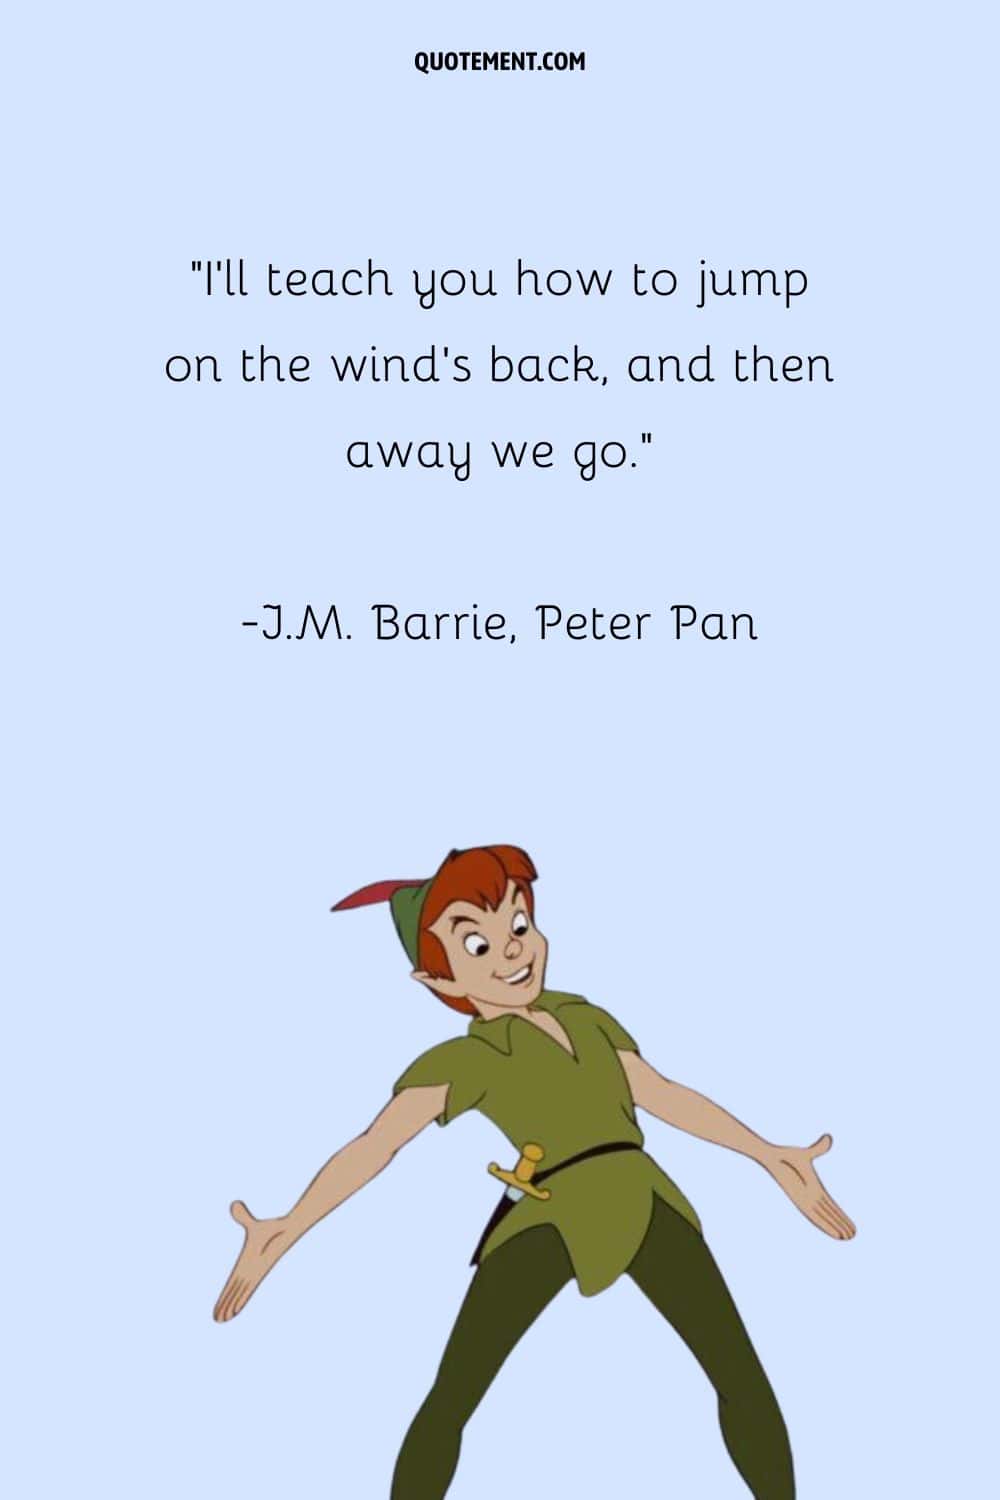 "Te enseñaré a saltar a lomos del viento, y luego nos iremos". - J.M. Barrie, Peter Pan